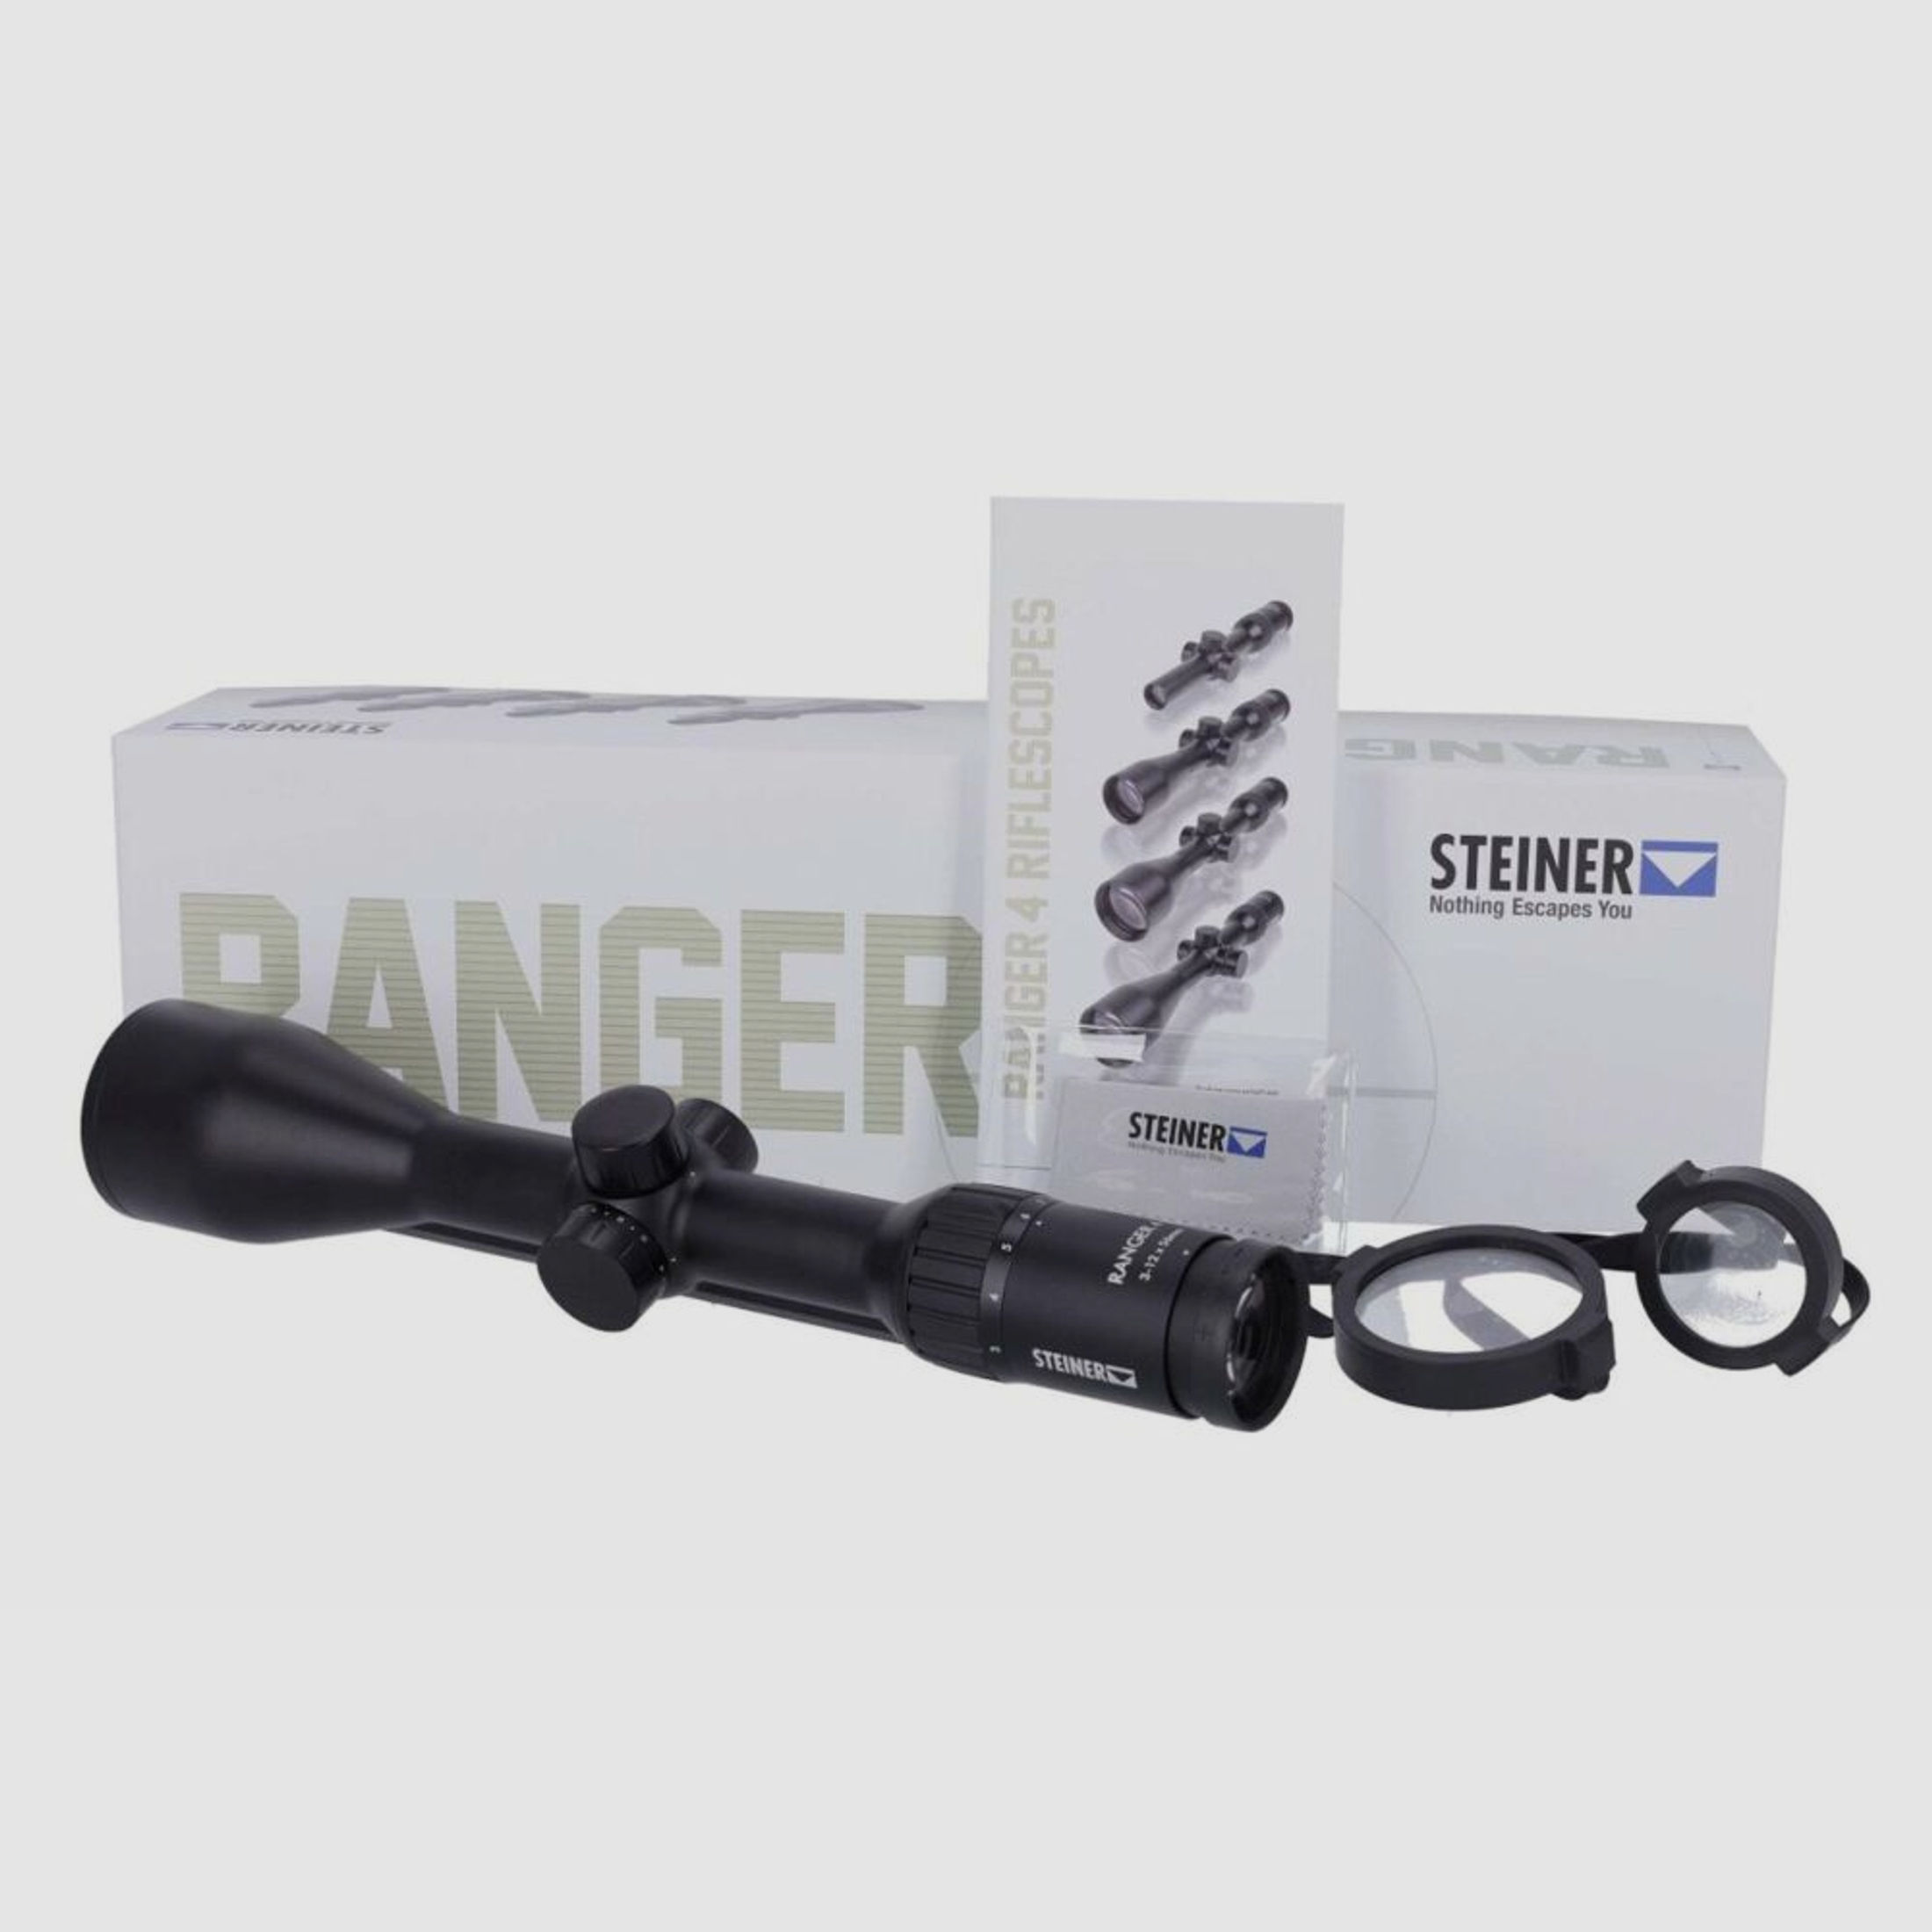 Steiner Ranger 4	 ZF Steiner Ranger 4  3-12x56  rail mount